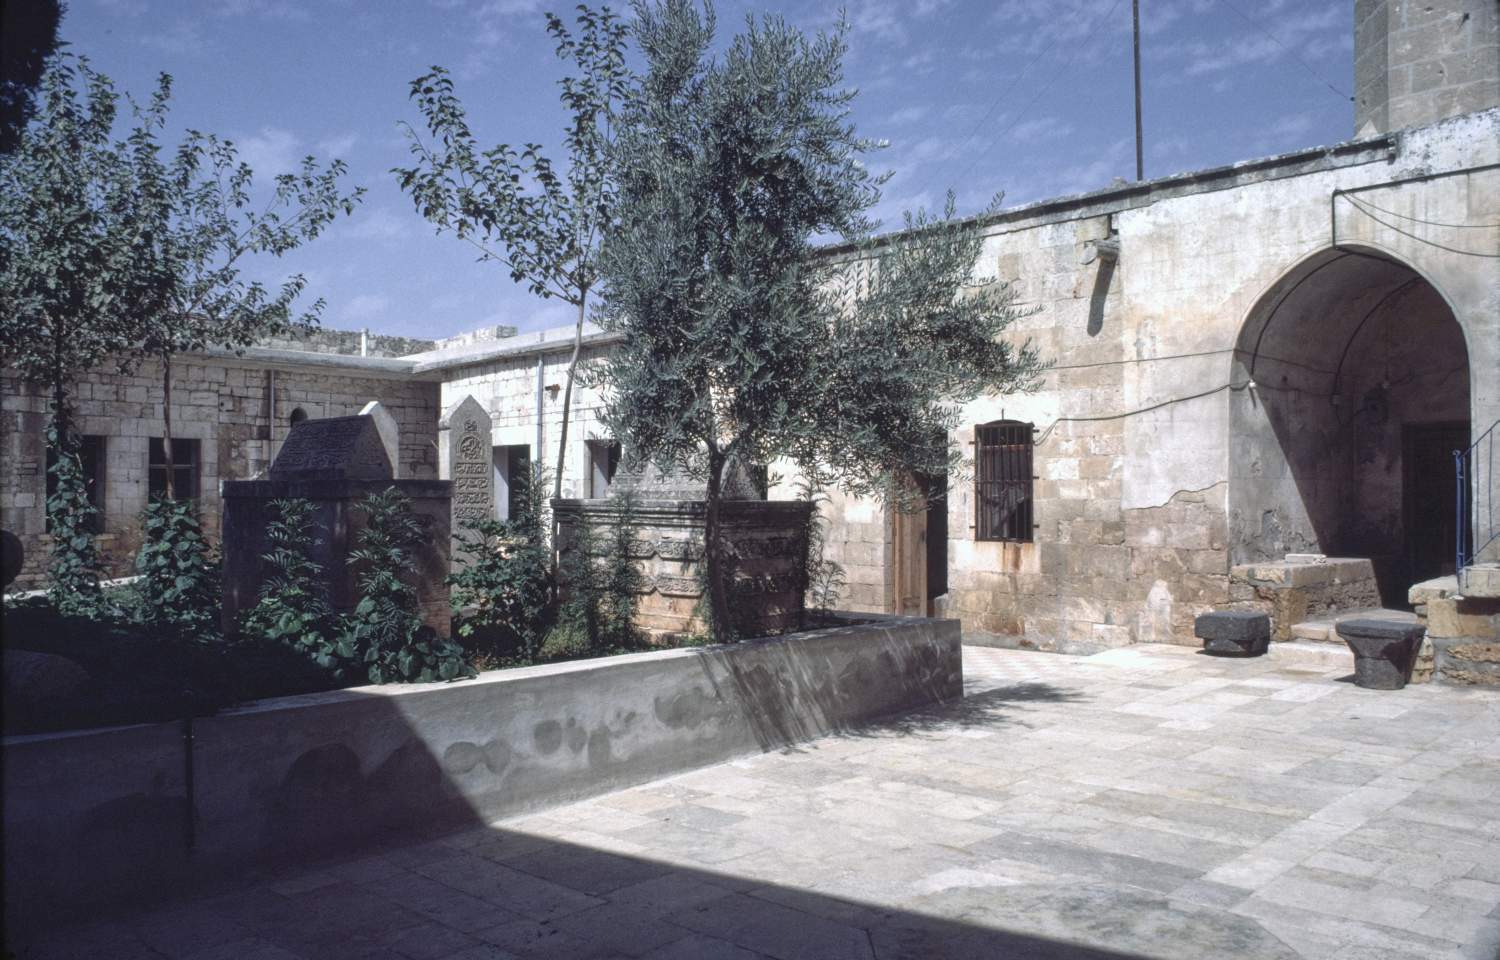 Maqam Ibrahim (Salihin) - View of courtyard.